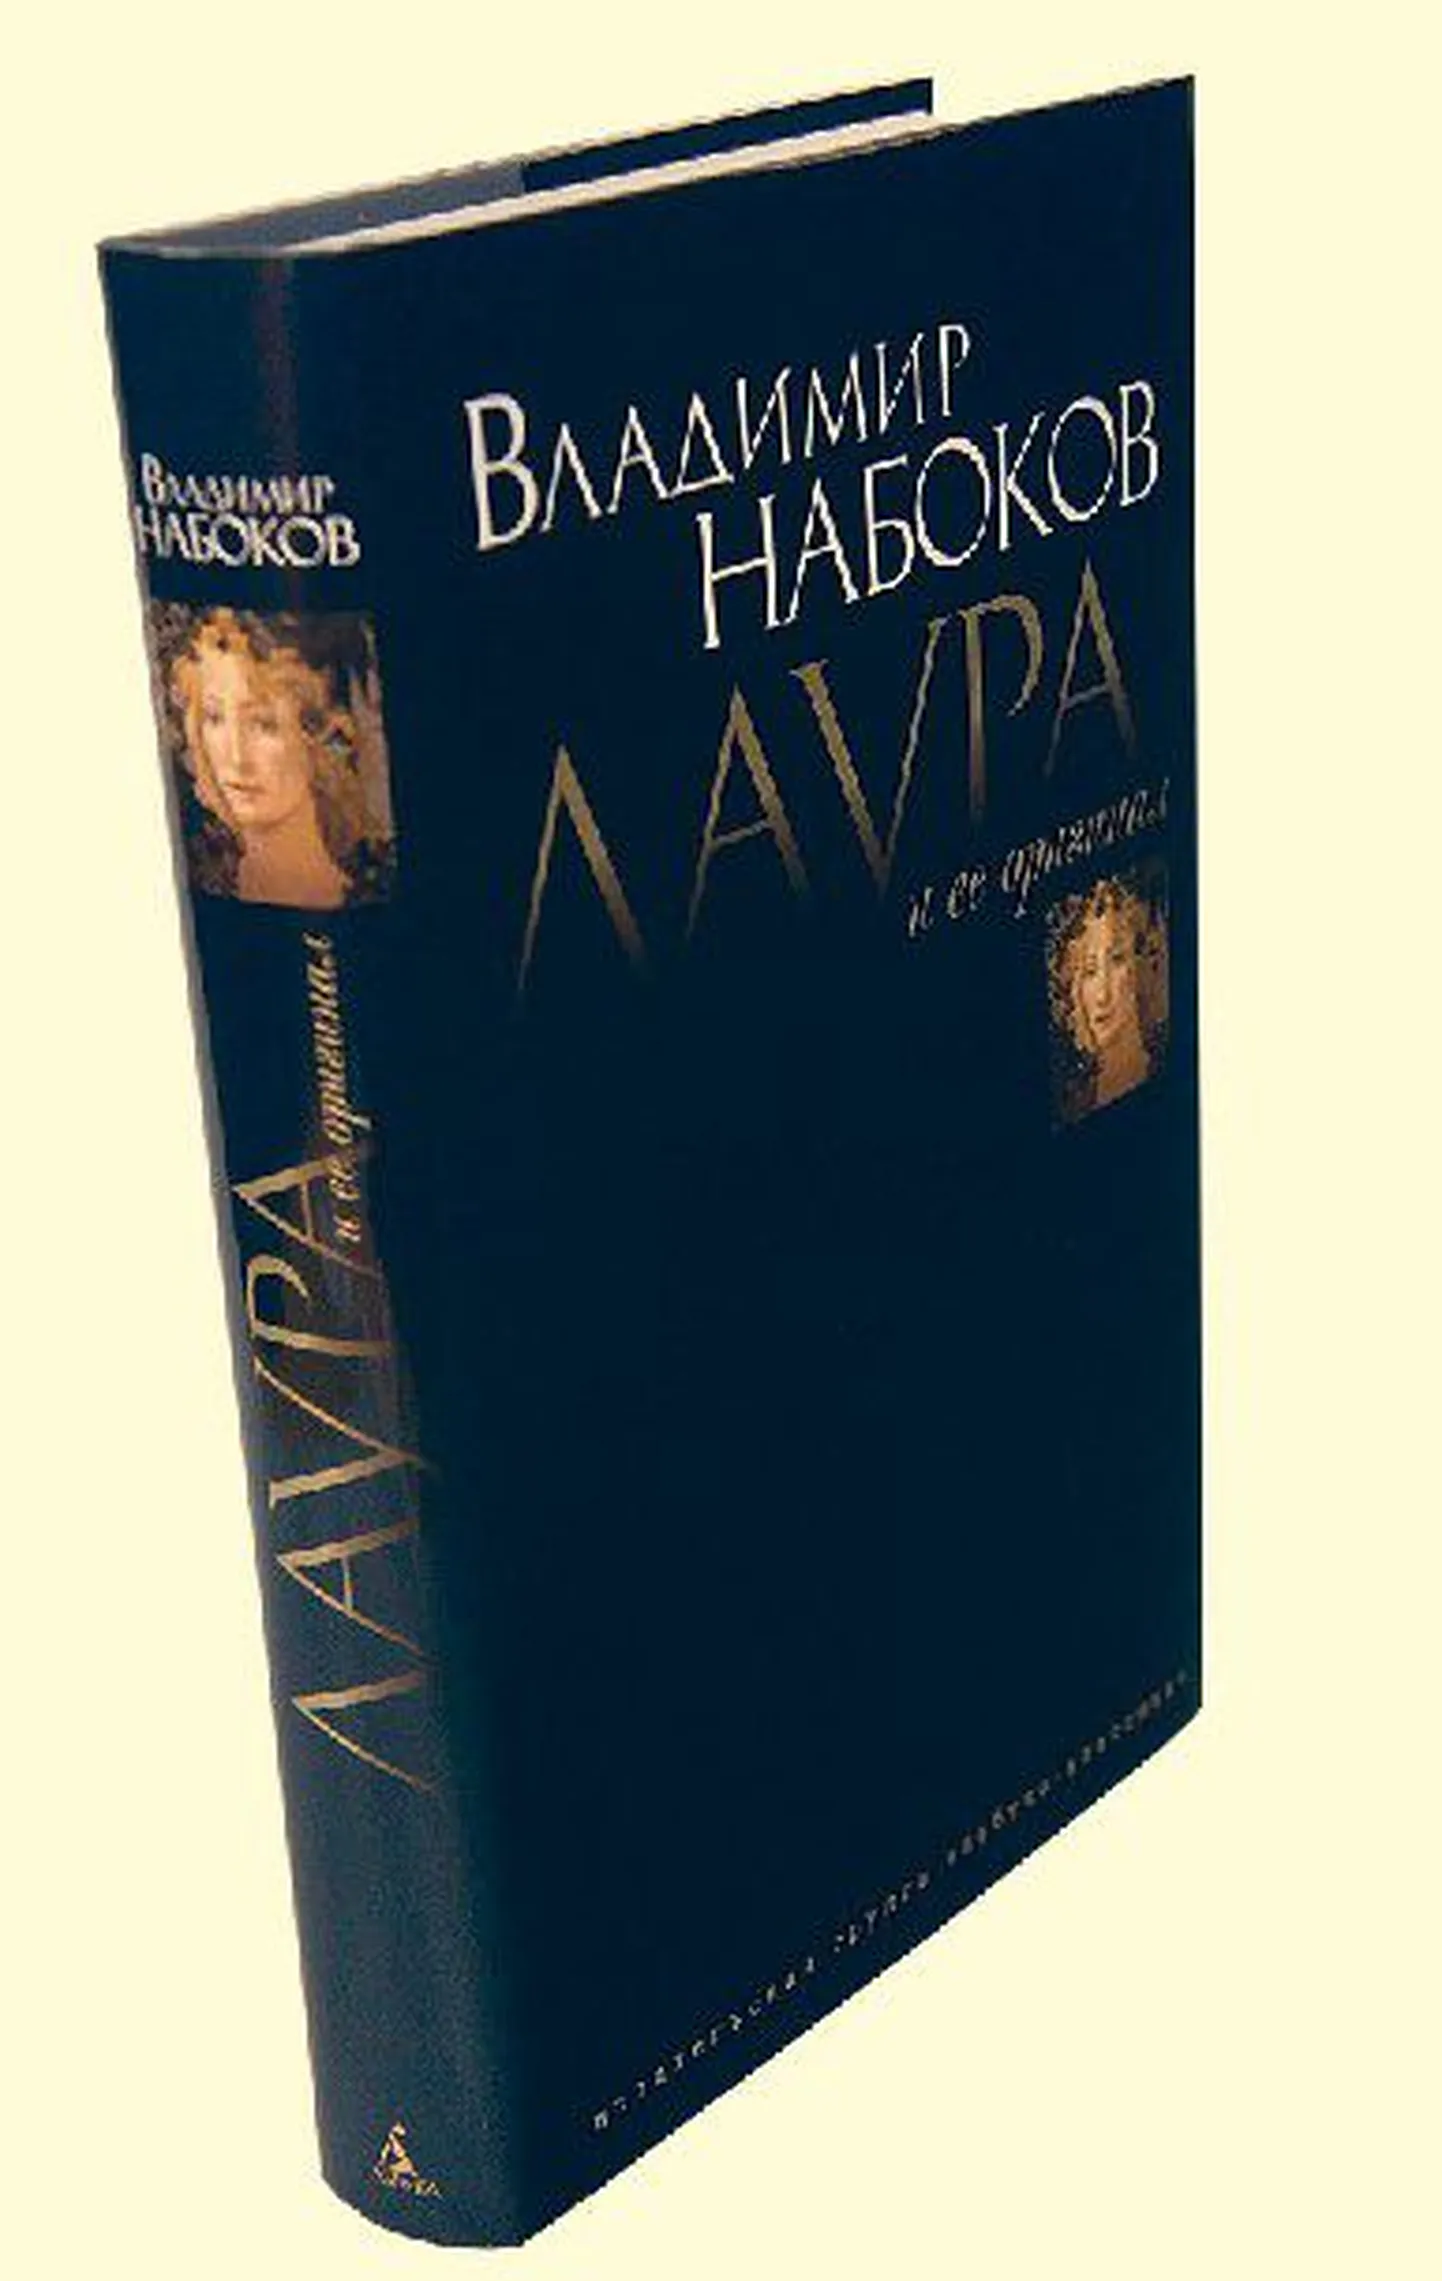 Набоков просил жену и сына сжечь свой роман «Лаура и ее оригинал», однако через несколько десятилетий он все-таки был переведен и опубликован.